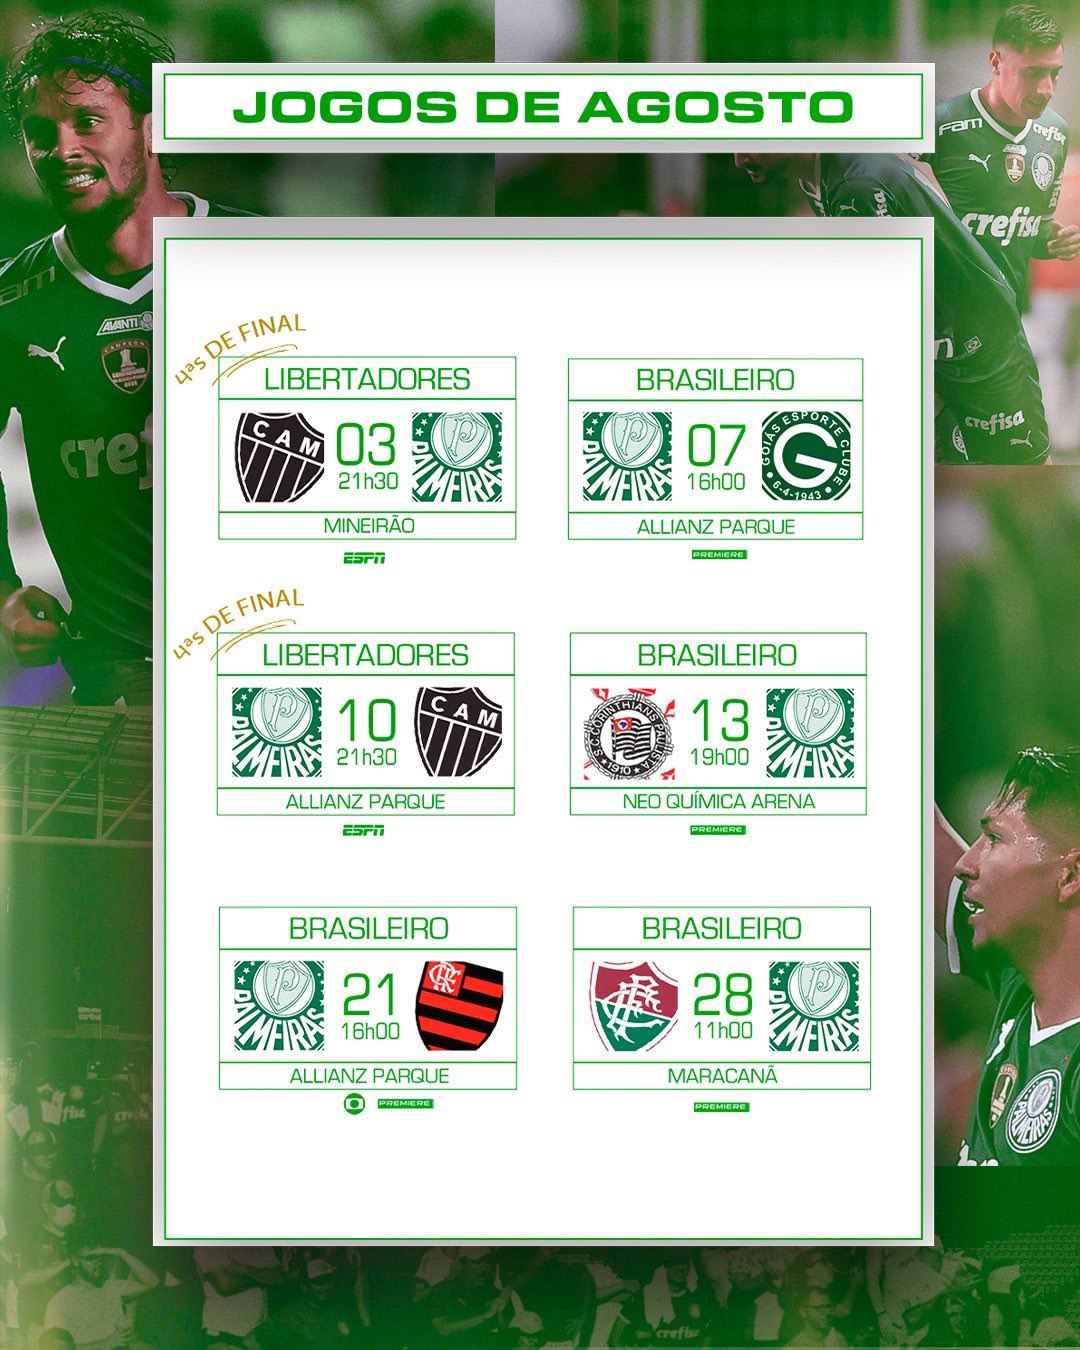 Calendário de jogos do Palmeiras em junho é definido